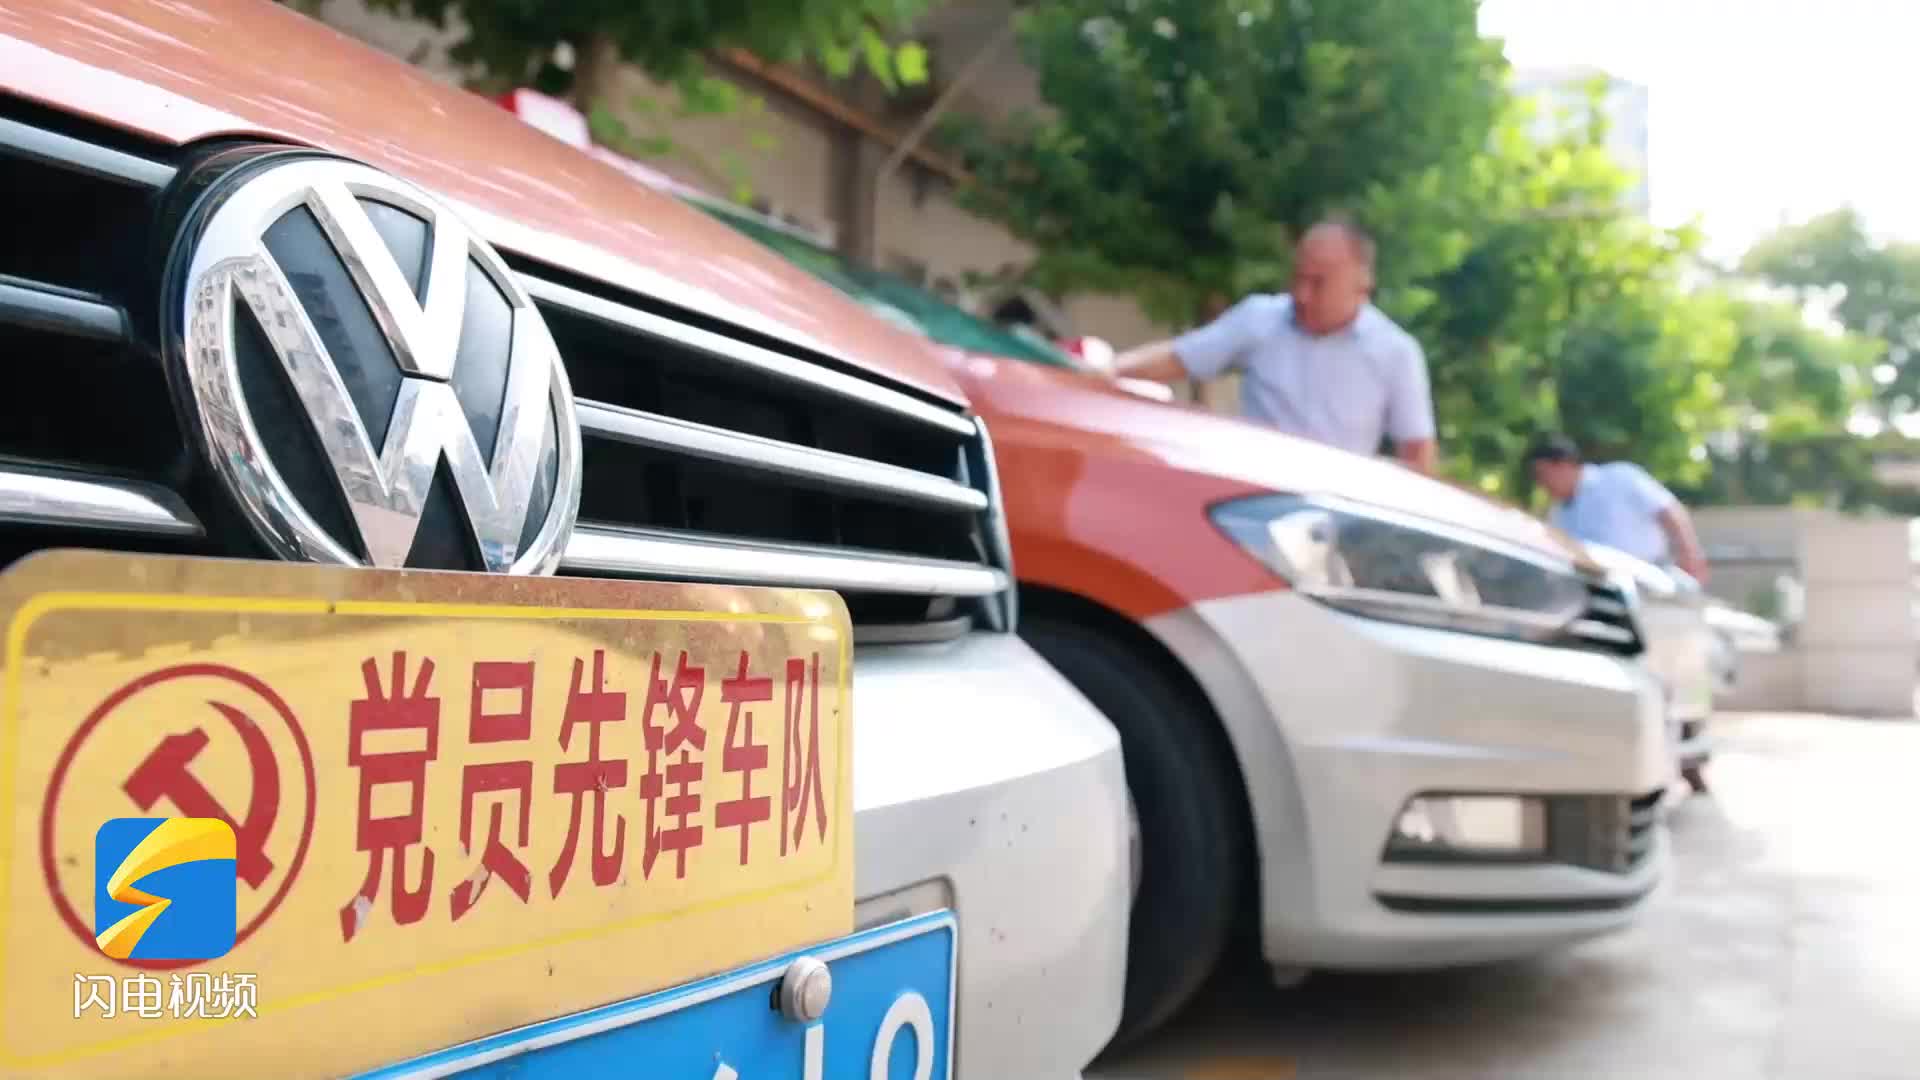 “学习强国”主题出租车亮相济南市中区